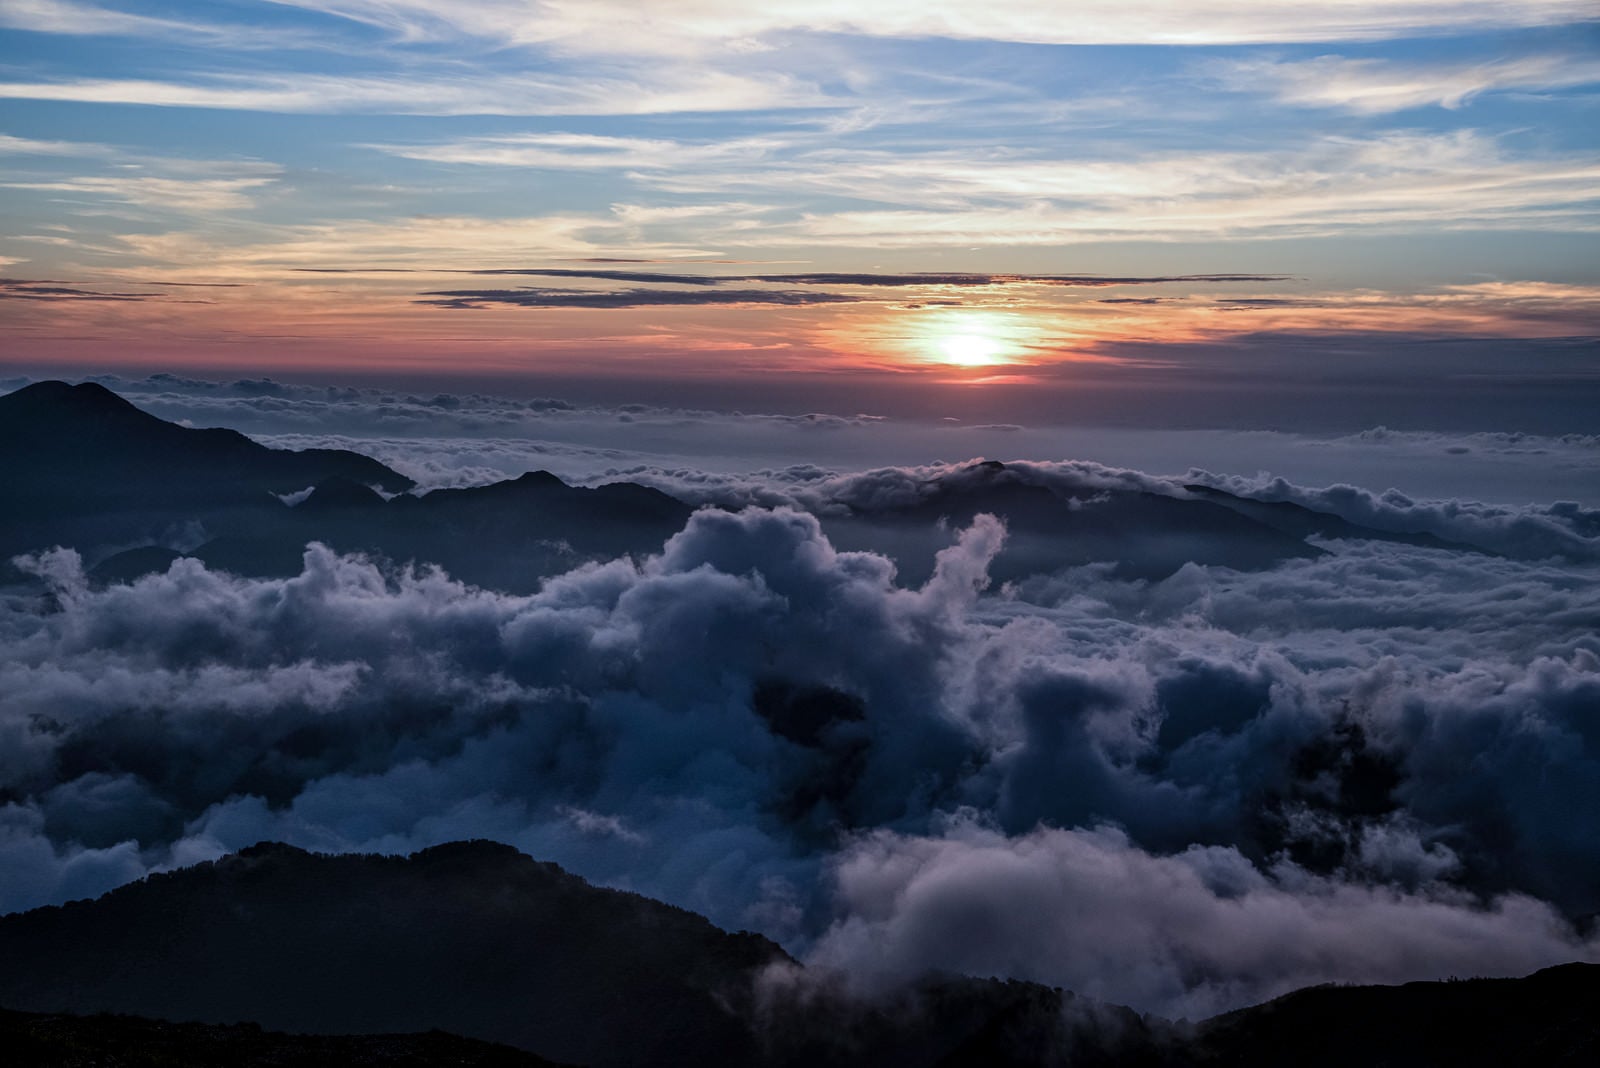 「天狗原から見る日没目前の夕日 」の写真